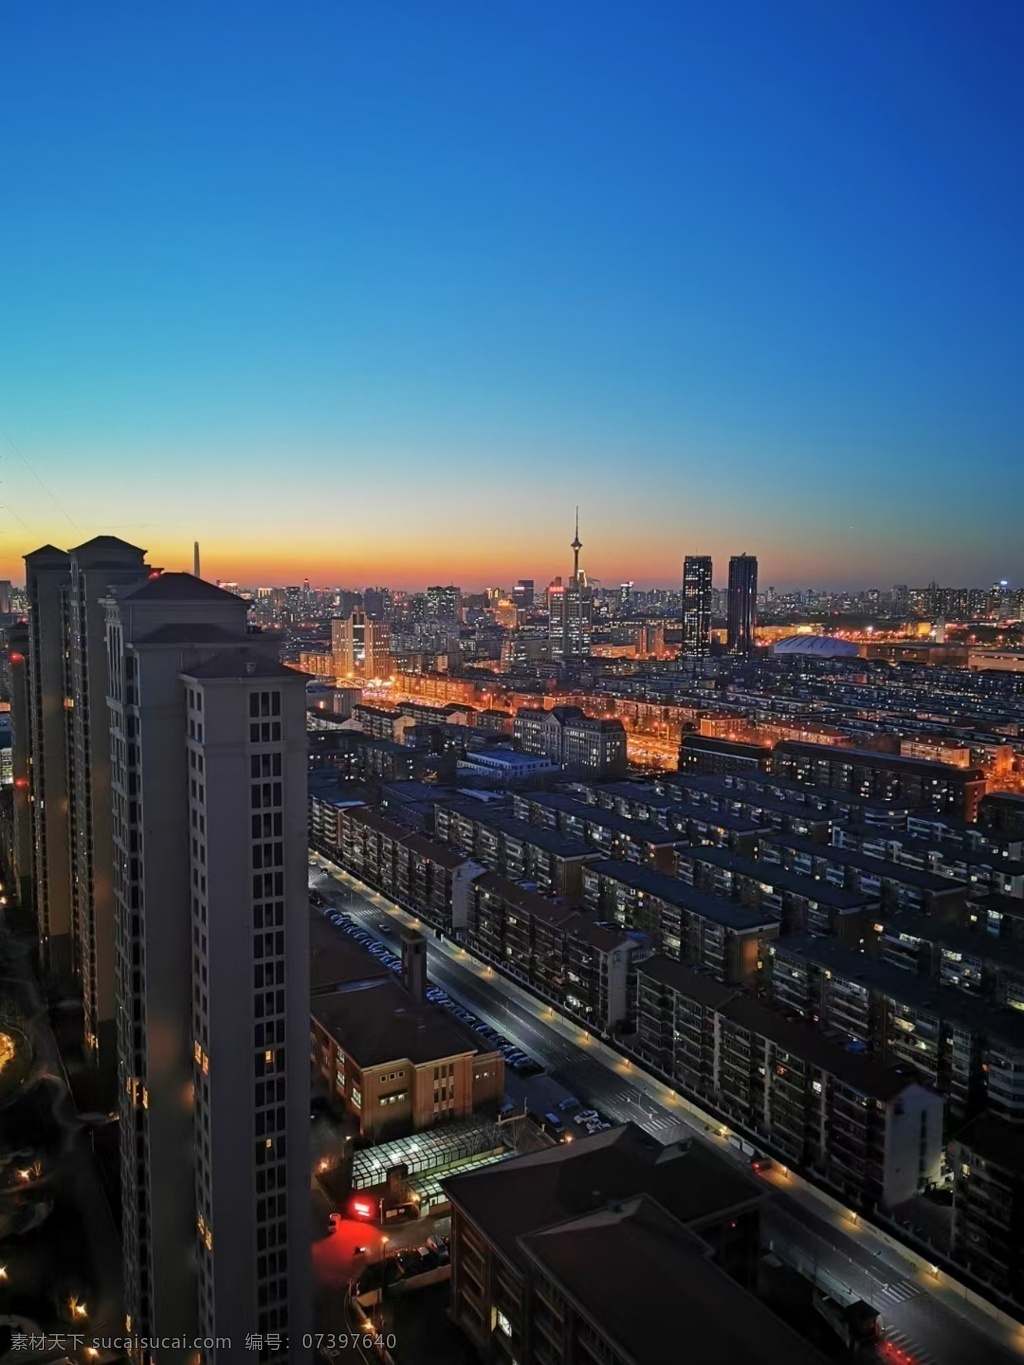 城市夜景图片 城市 剪影 缤纷城市 天津地标 城市鸟瞰 城市夜景 天空 建筑园林 建筑摄影